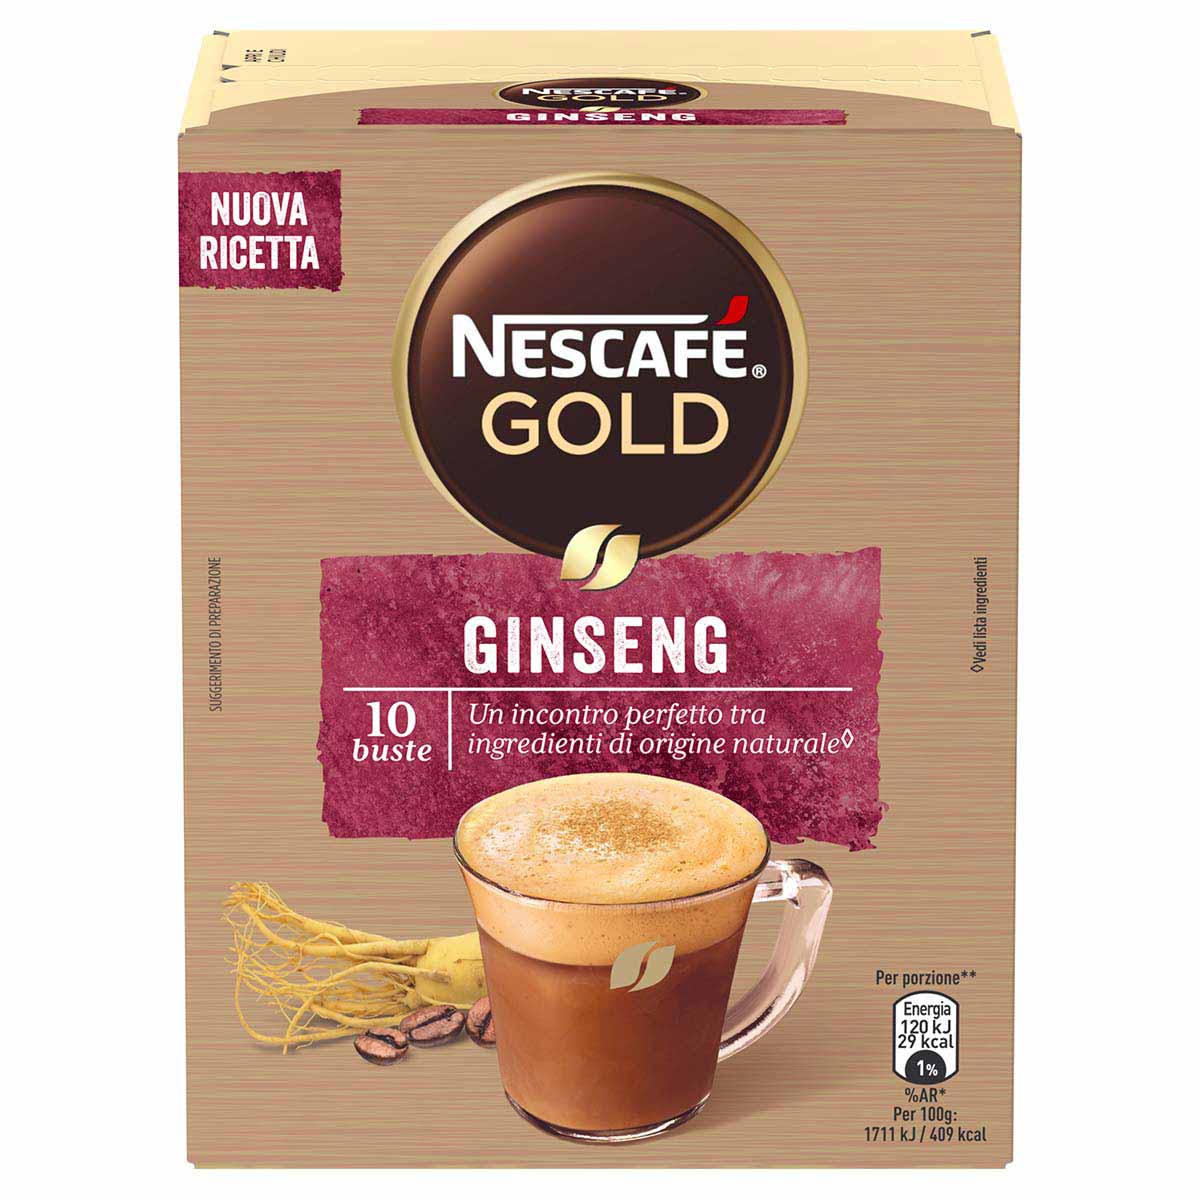 Nescafé GOLD GINSENG preparato solubile per caffè al ginseng astuccio 10 bustine 70g